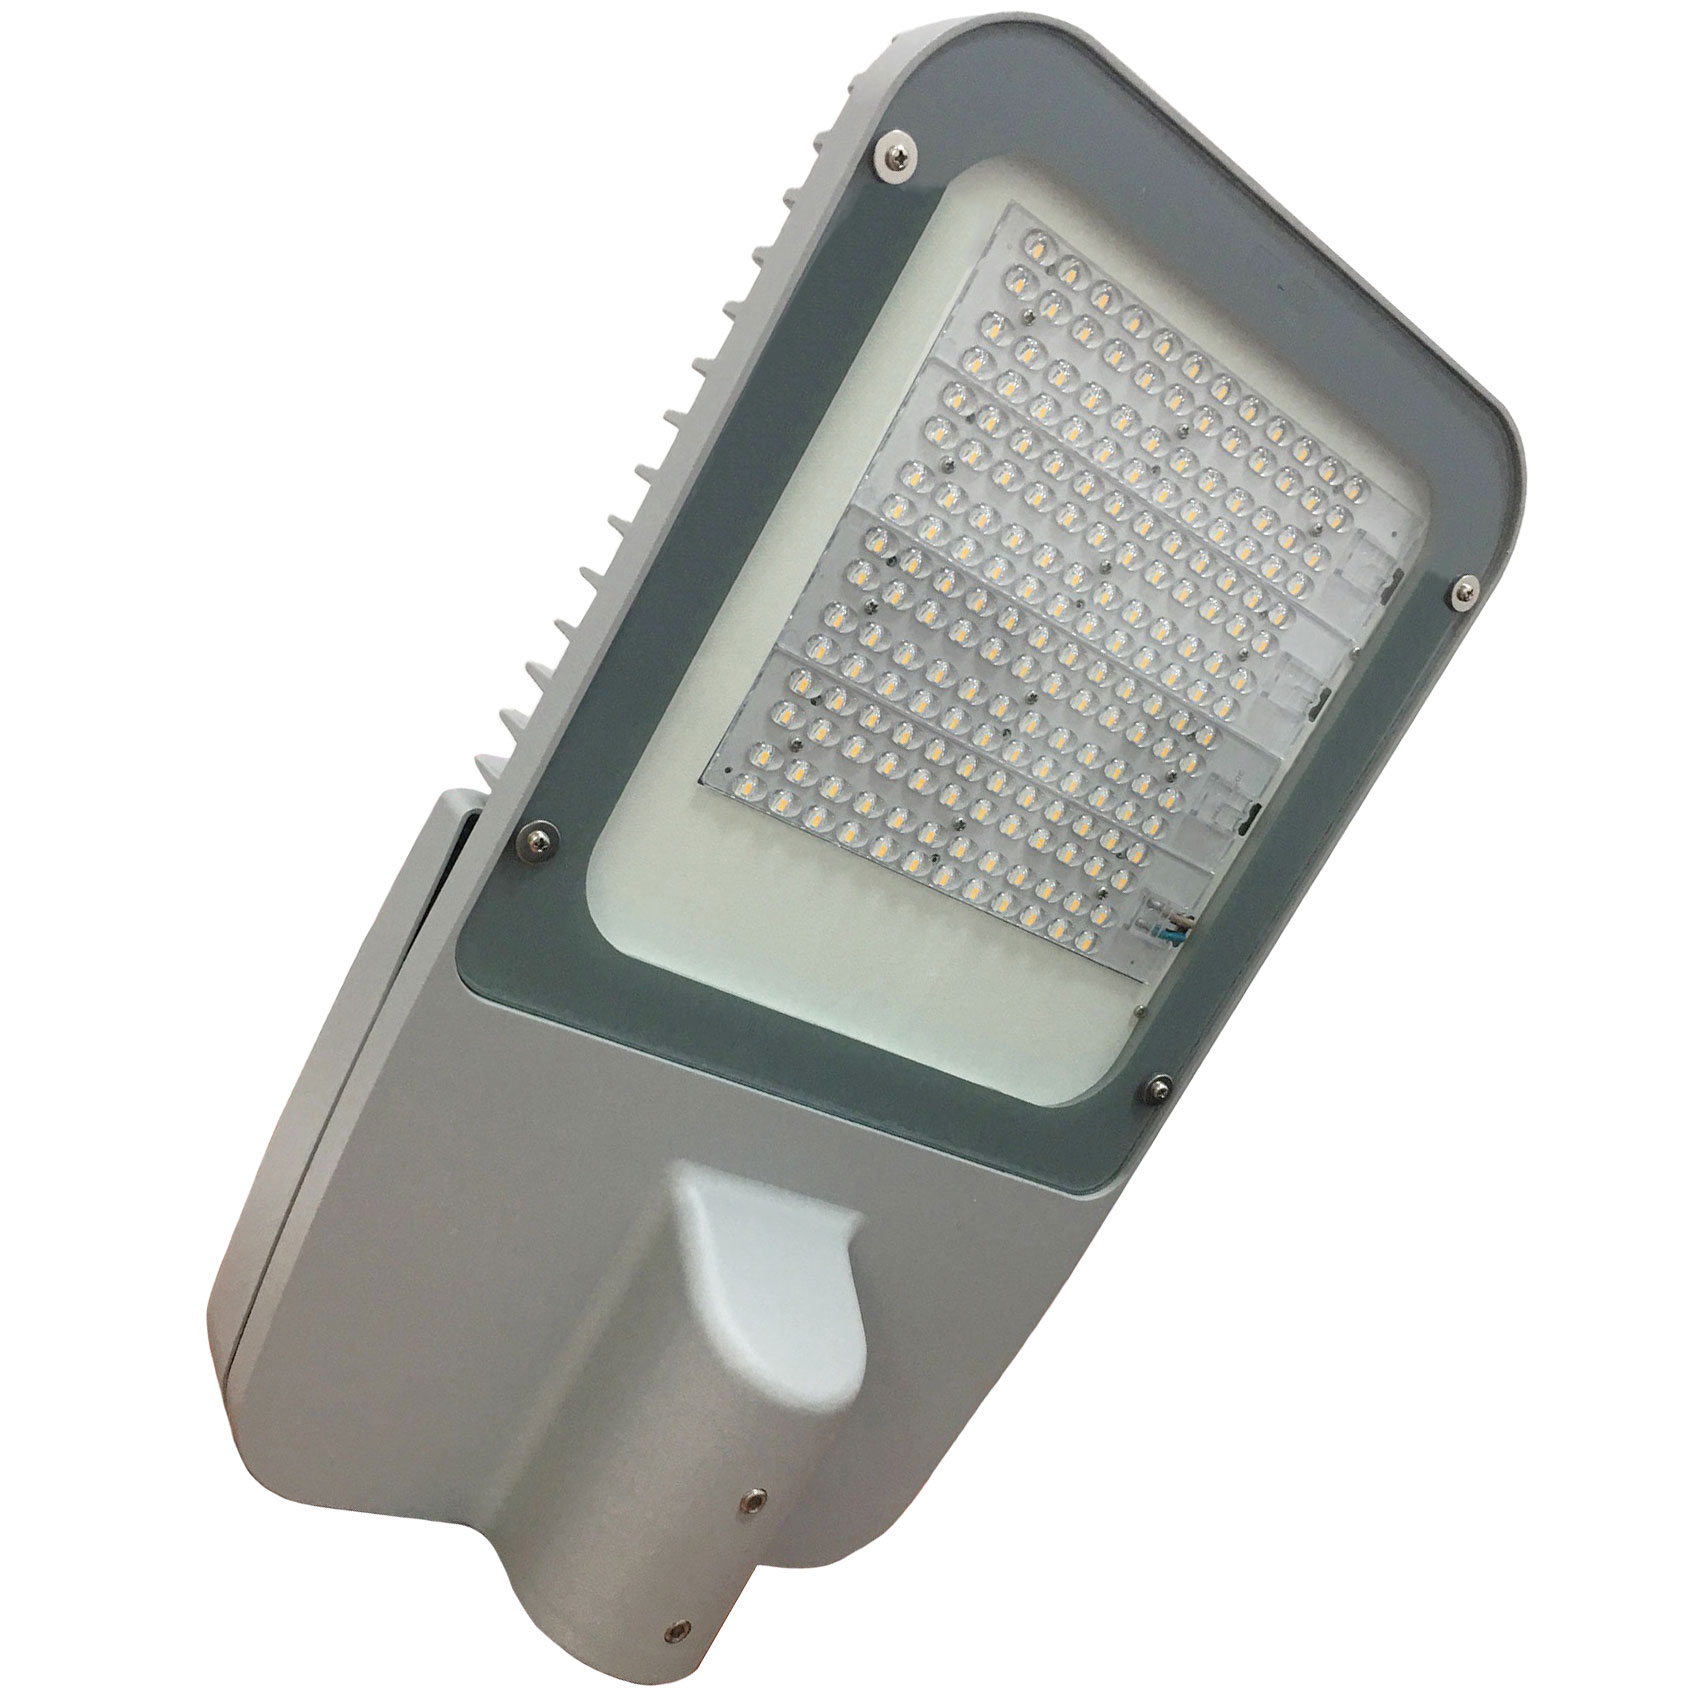 Hình ảnh sản phẩm thực tế đèn LED cao áp 200w HLS4